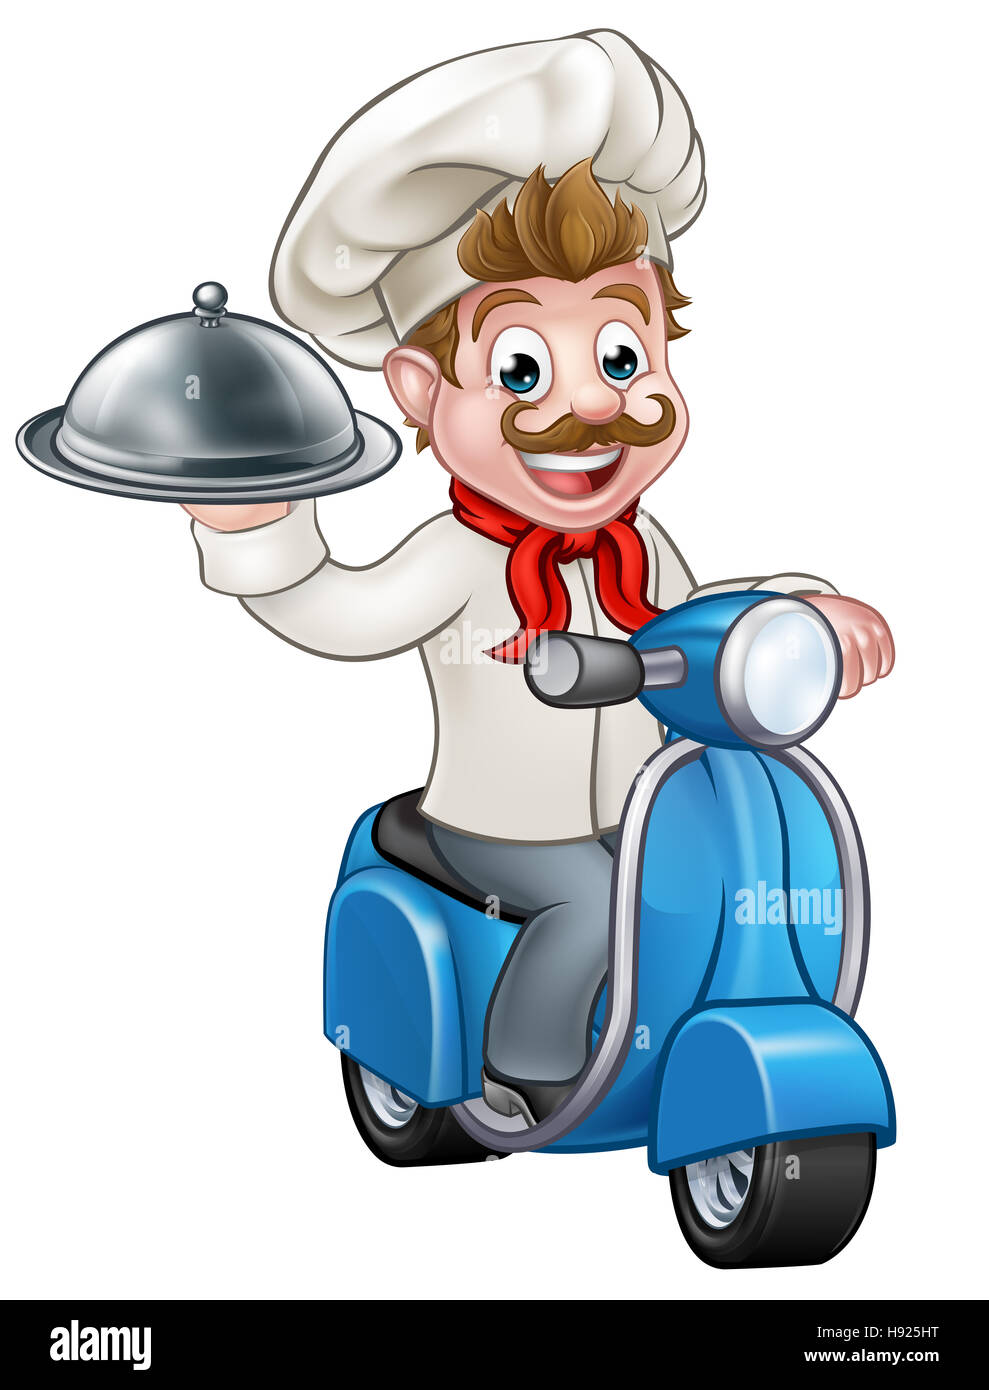 Chef ou cuisinier Cartoon character équitation un cyclomoteur moto scooter offrant une cloche d'argent repas alimentaire bac plateau plaque Banque D'Images